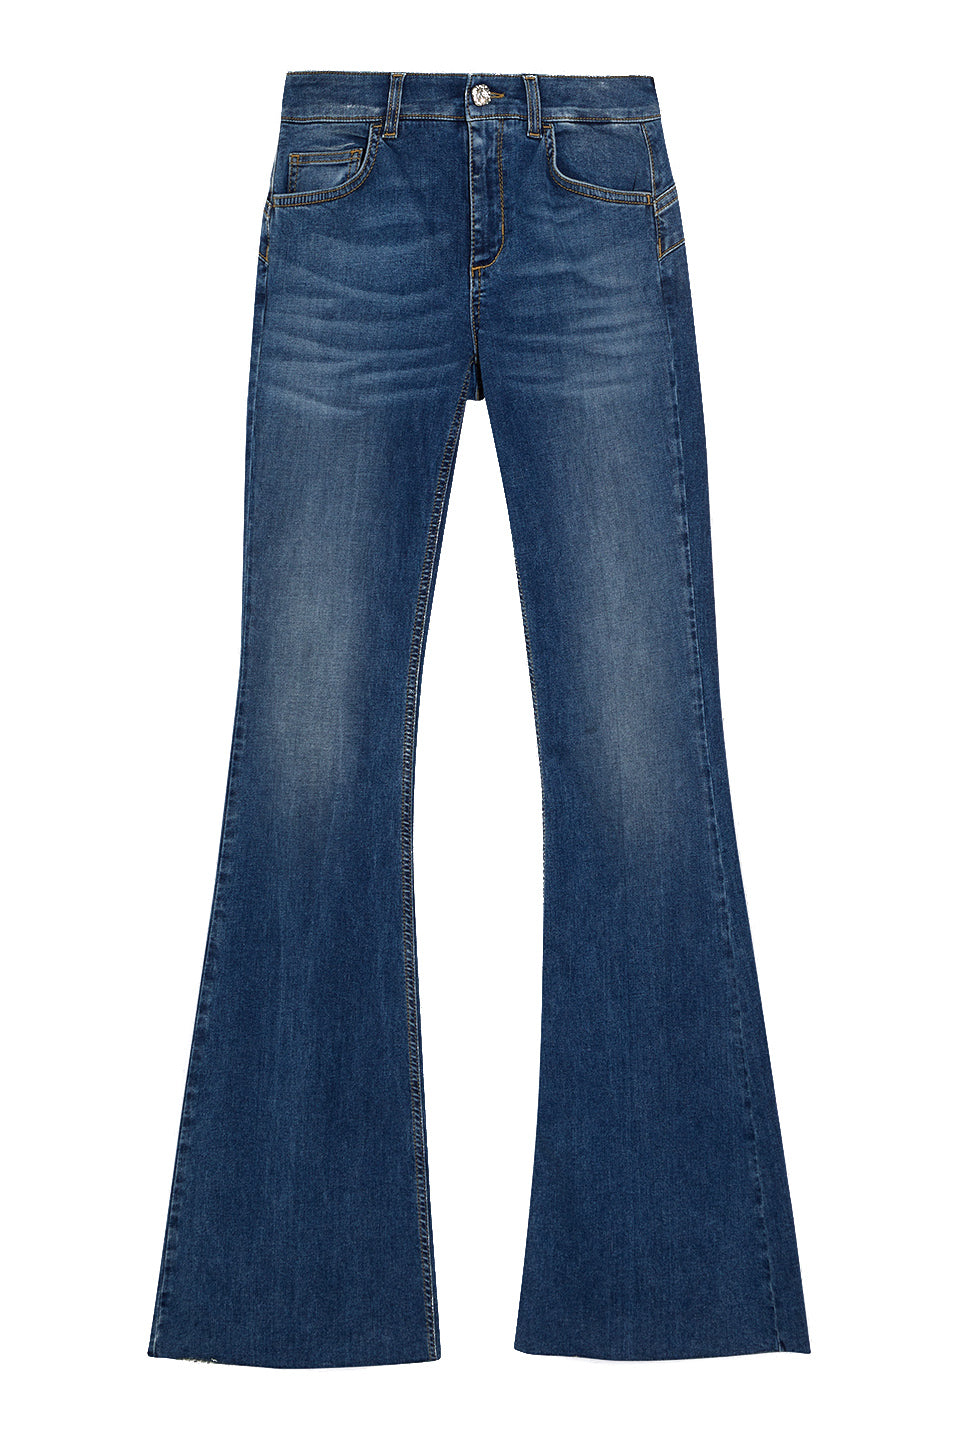 LIU JO Jeans a zampa vita bassa stretch ecosostenibile - Mancinelli 1954